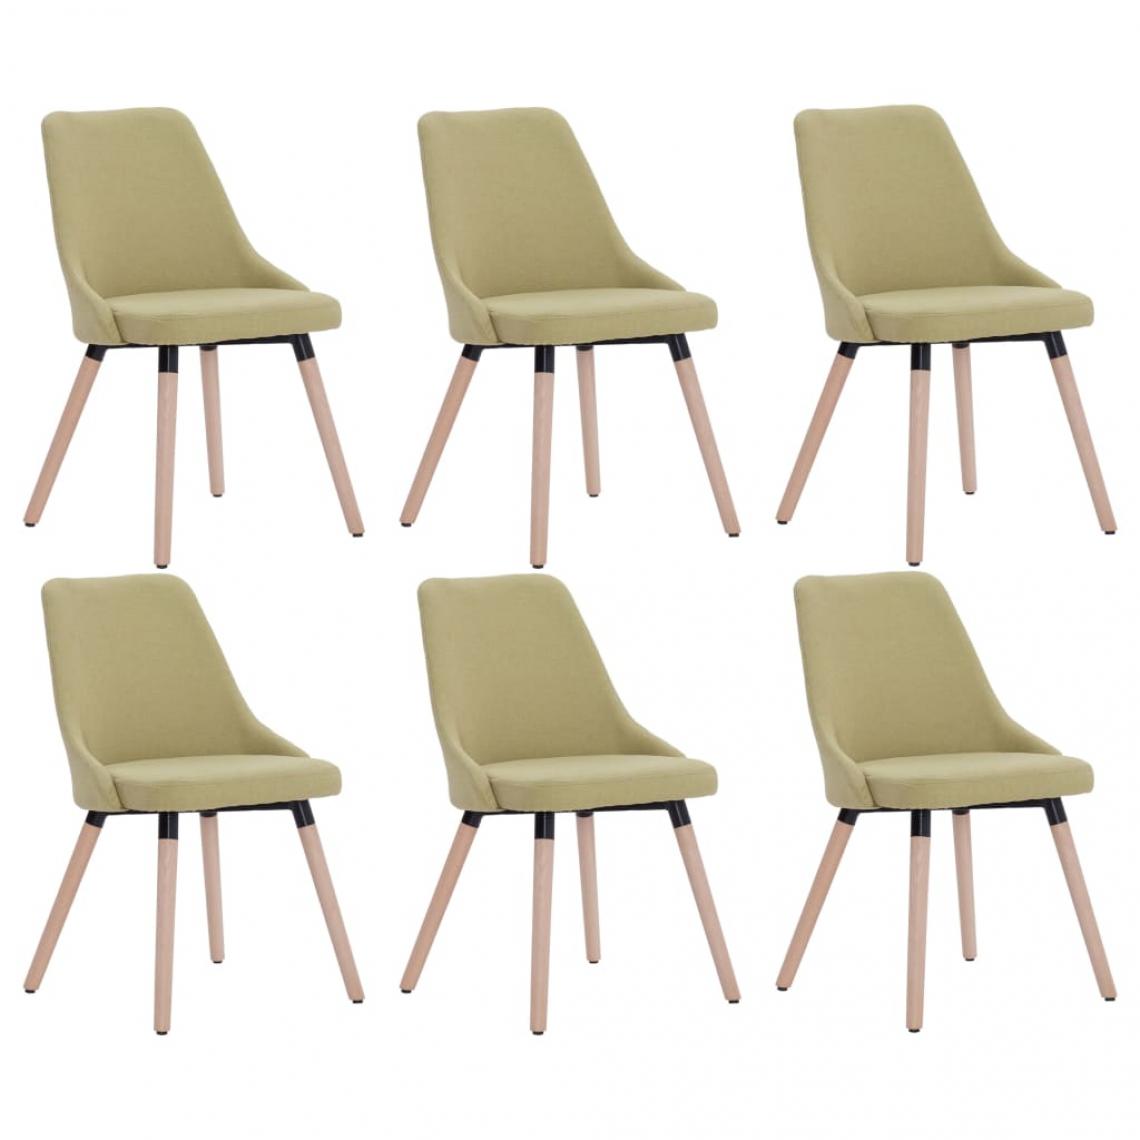 Decoshop26 - Lot de 6 chaises de salle à manger cuisine design moderne tissu vert CDS022910 - Chaises